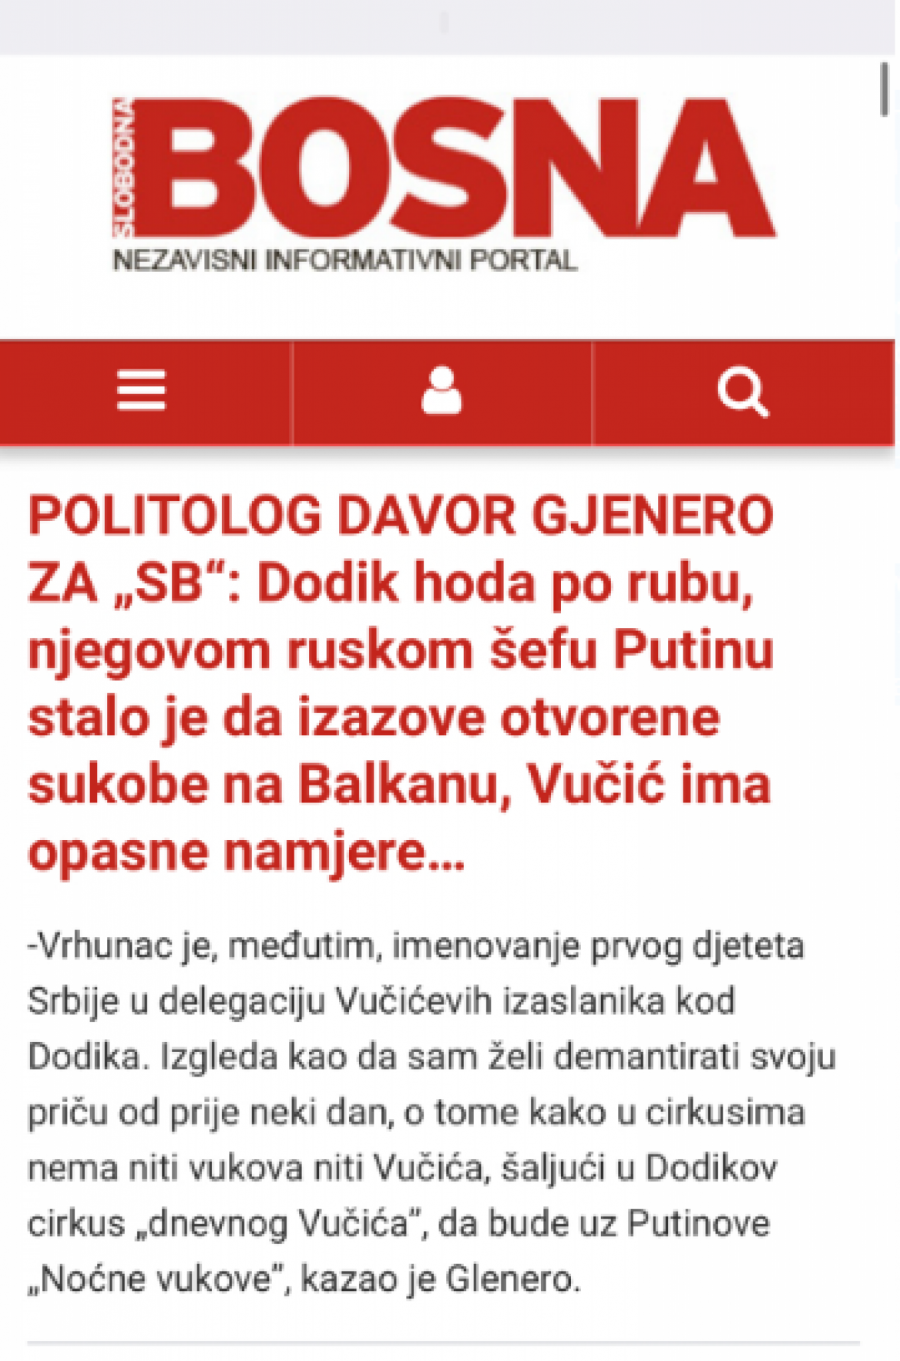 UŽAS! Danilo ponovo na meti! Vučić im je kriv za sve!